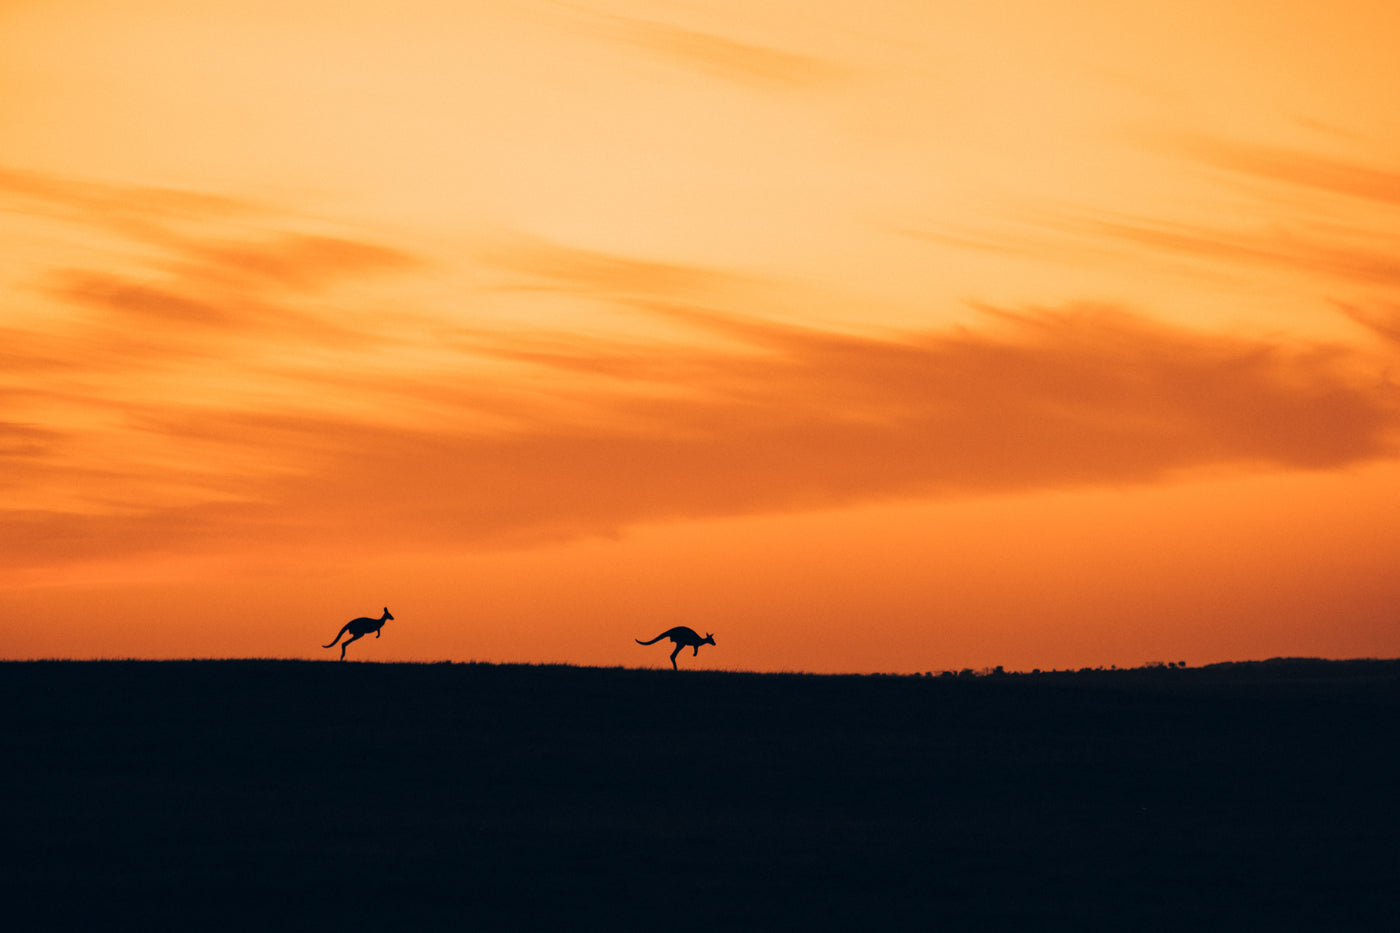 The Sihouette of Kangaroos / Esperance, Western Australia